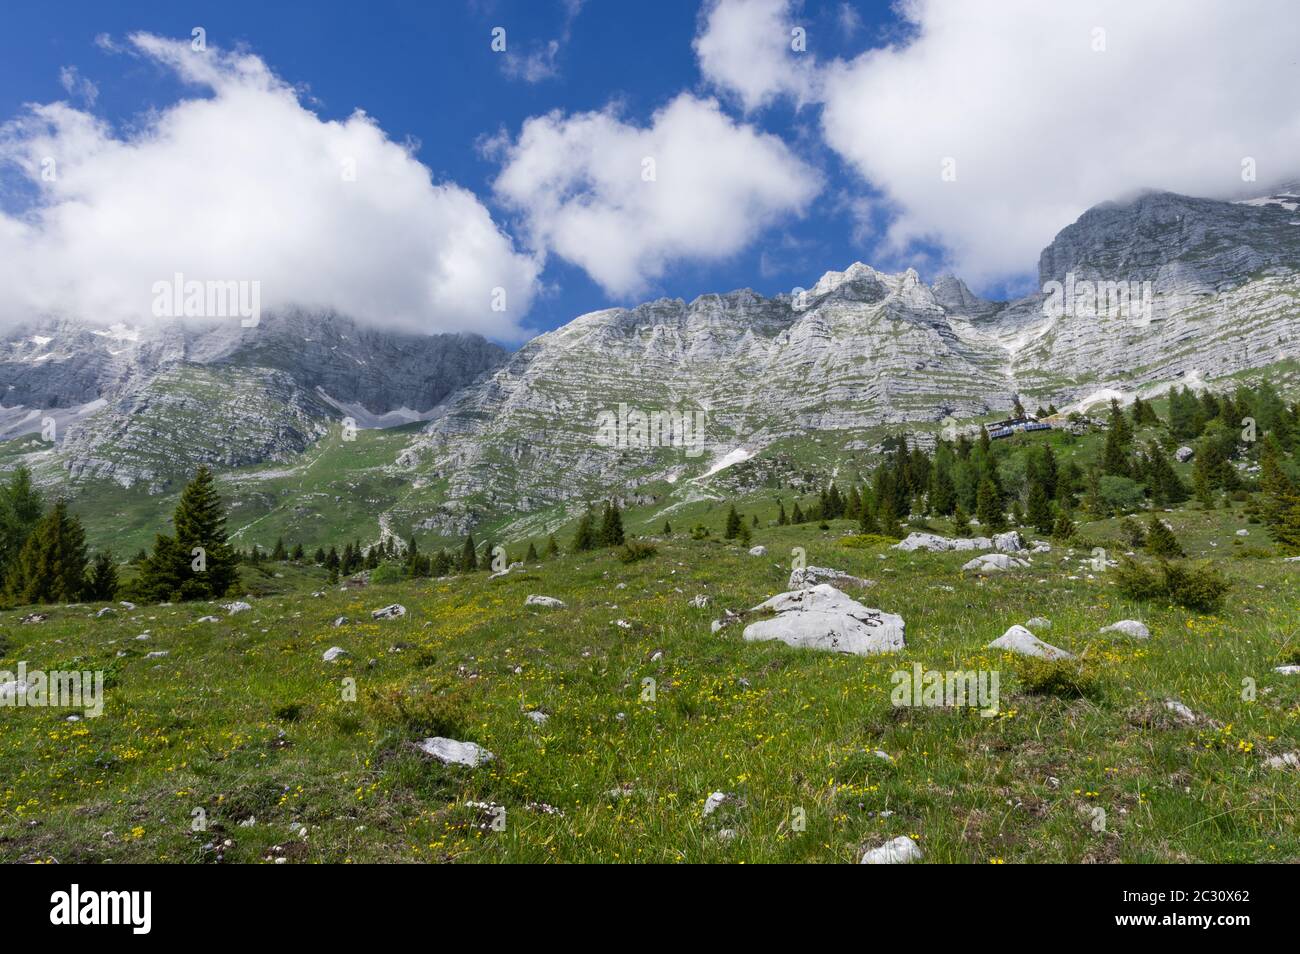 Montasio (Italie) - les deux montagnes de Jod di Montasion (2754 mètres a.s.l.) et Cima di Terrarossa (2400 mètres a.s.l.), comme vu à la fin du printemps 2020 Banque D'Images